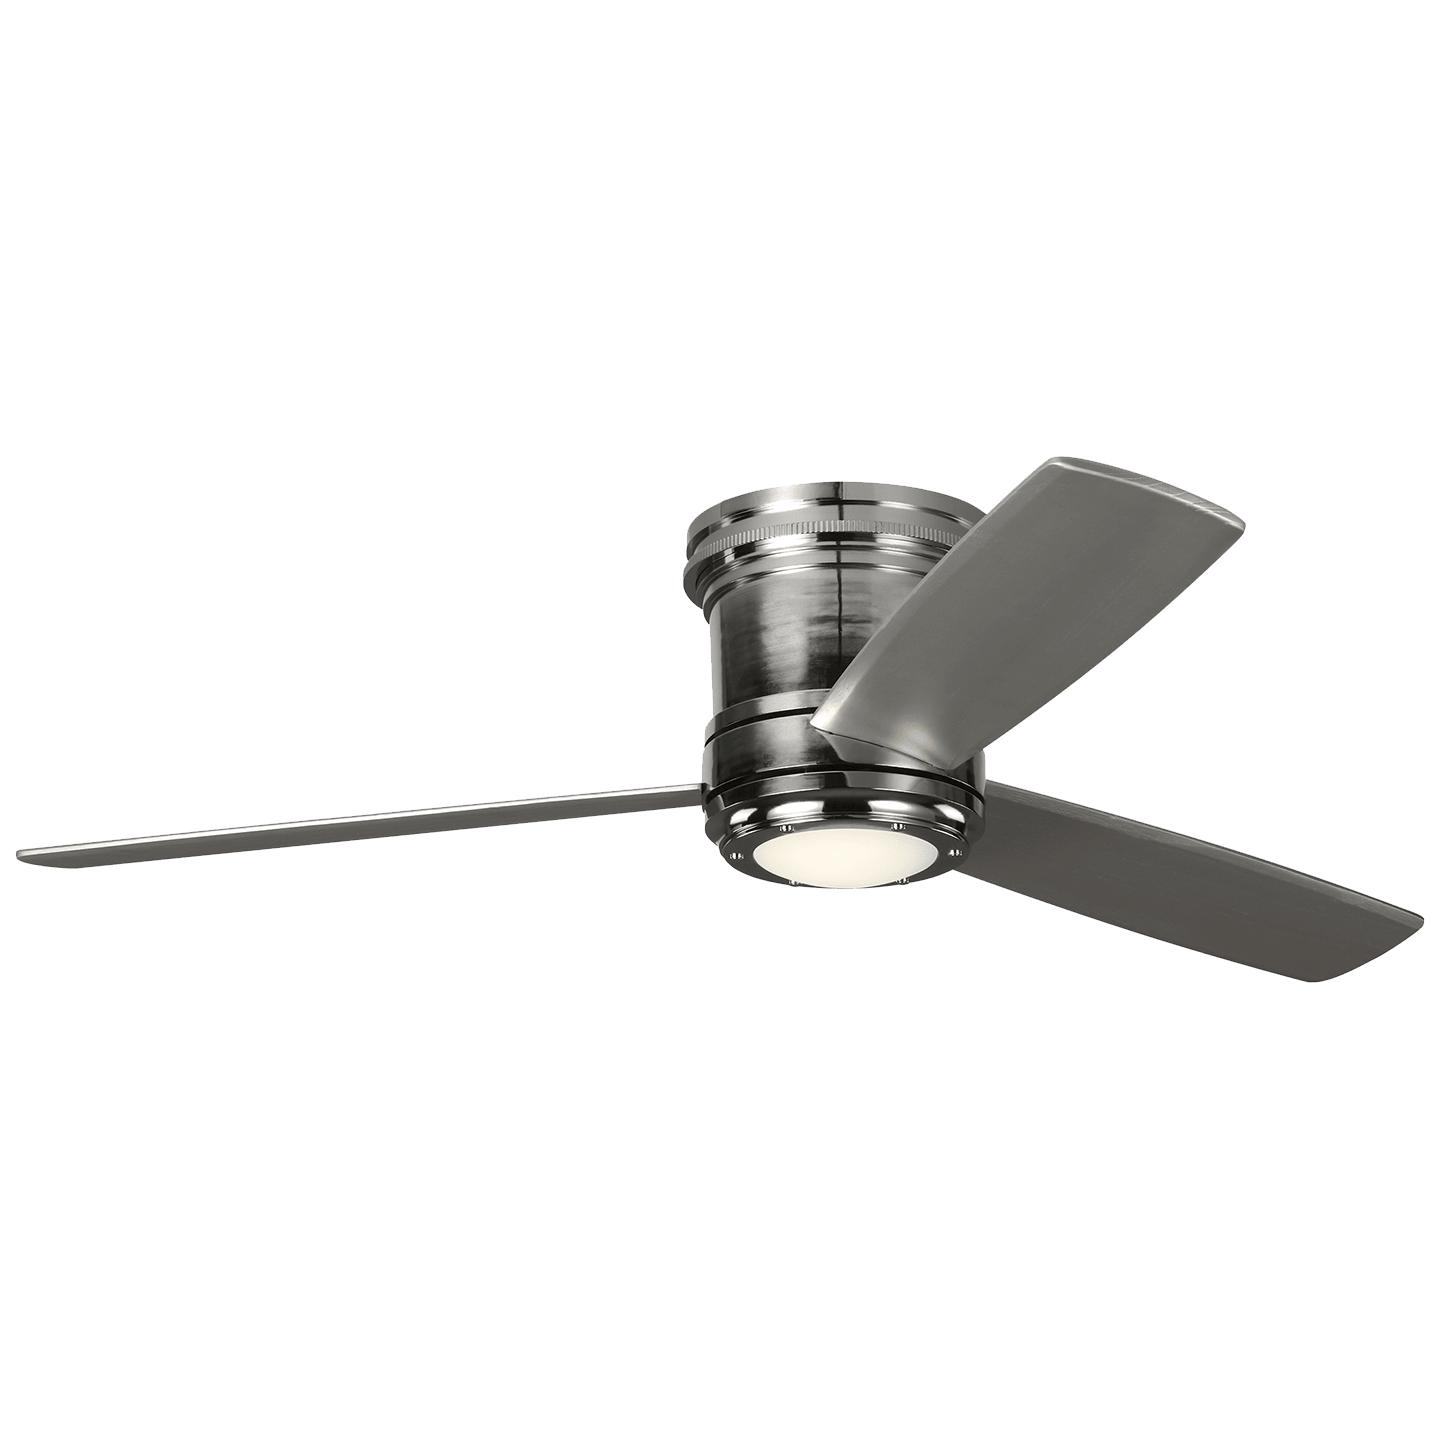 Купить Потолочный вентилятор Aerotour 56" Semi-Flush Ceiling Fan в интернет-магазине roooms.ru